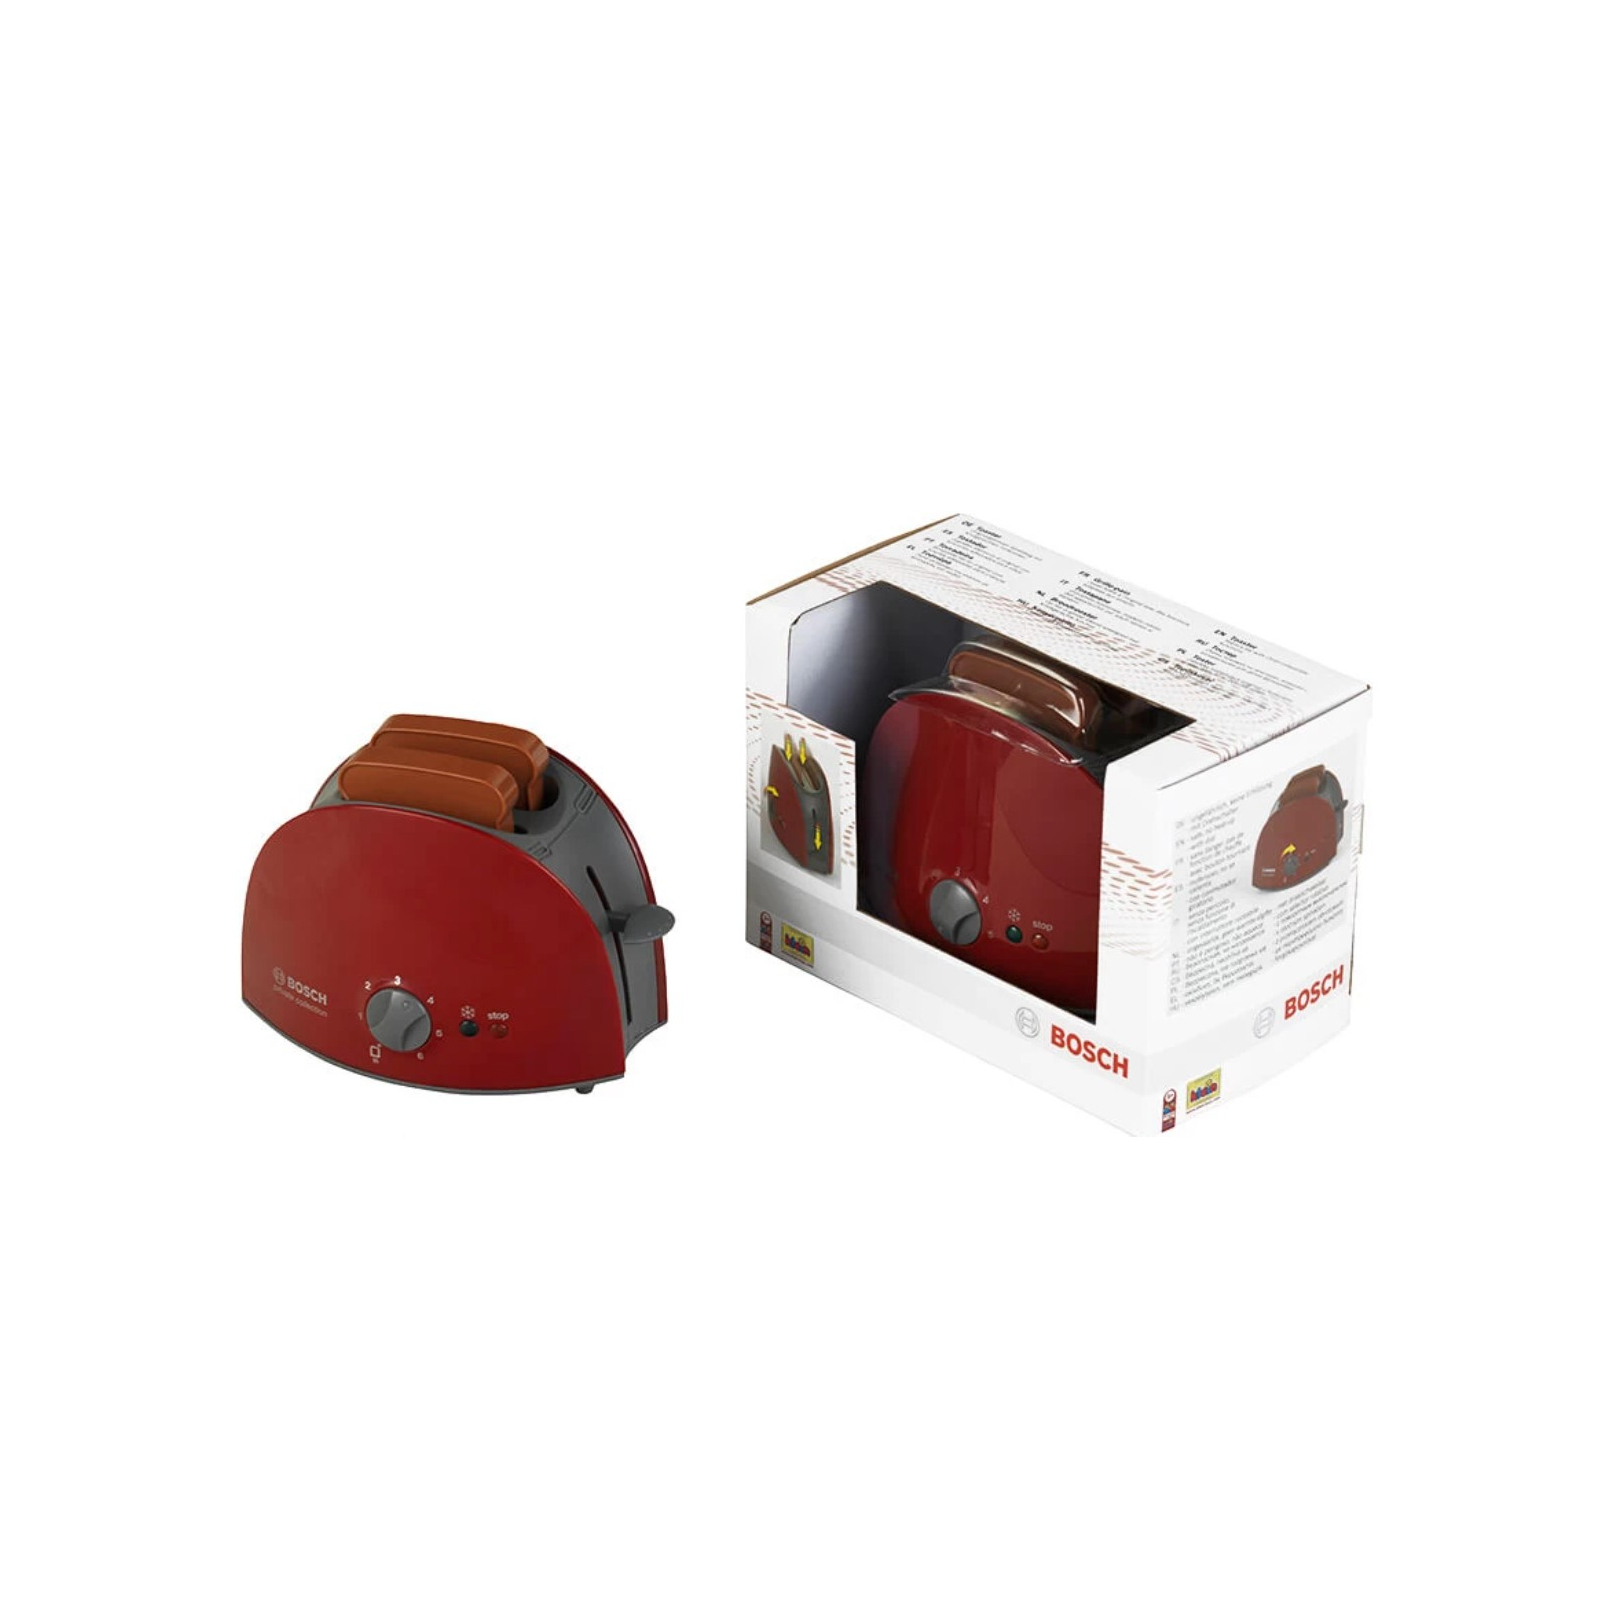 Игровой набор Bosch Тостер (9578) изображение 2